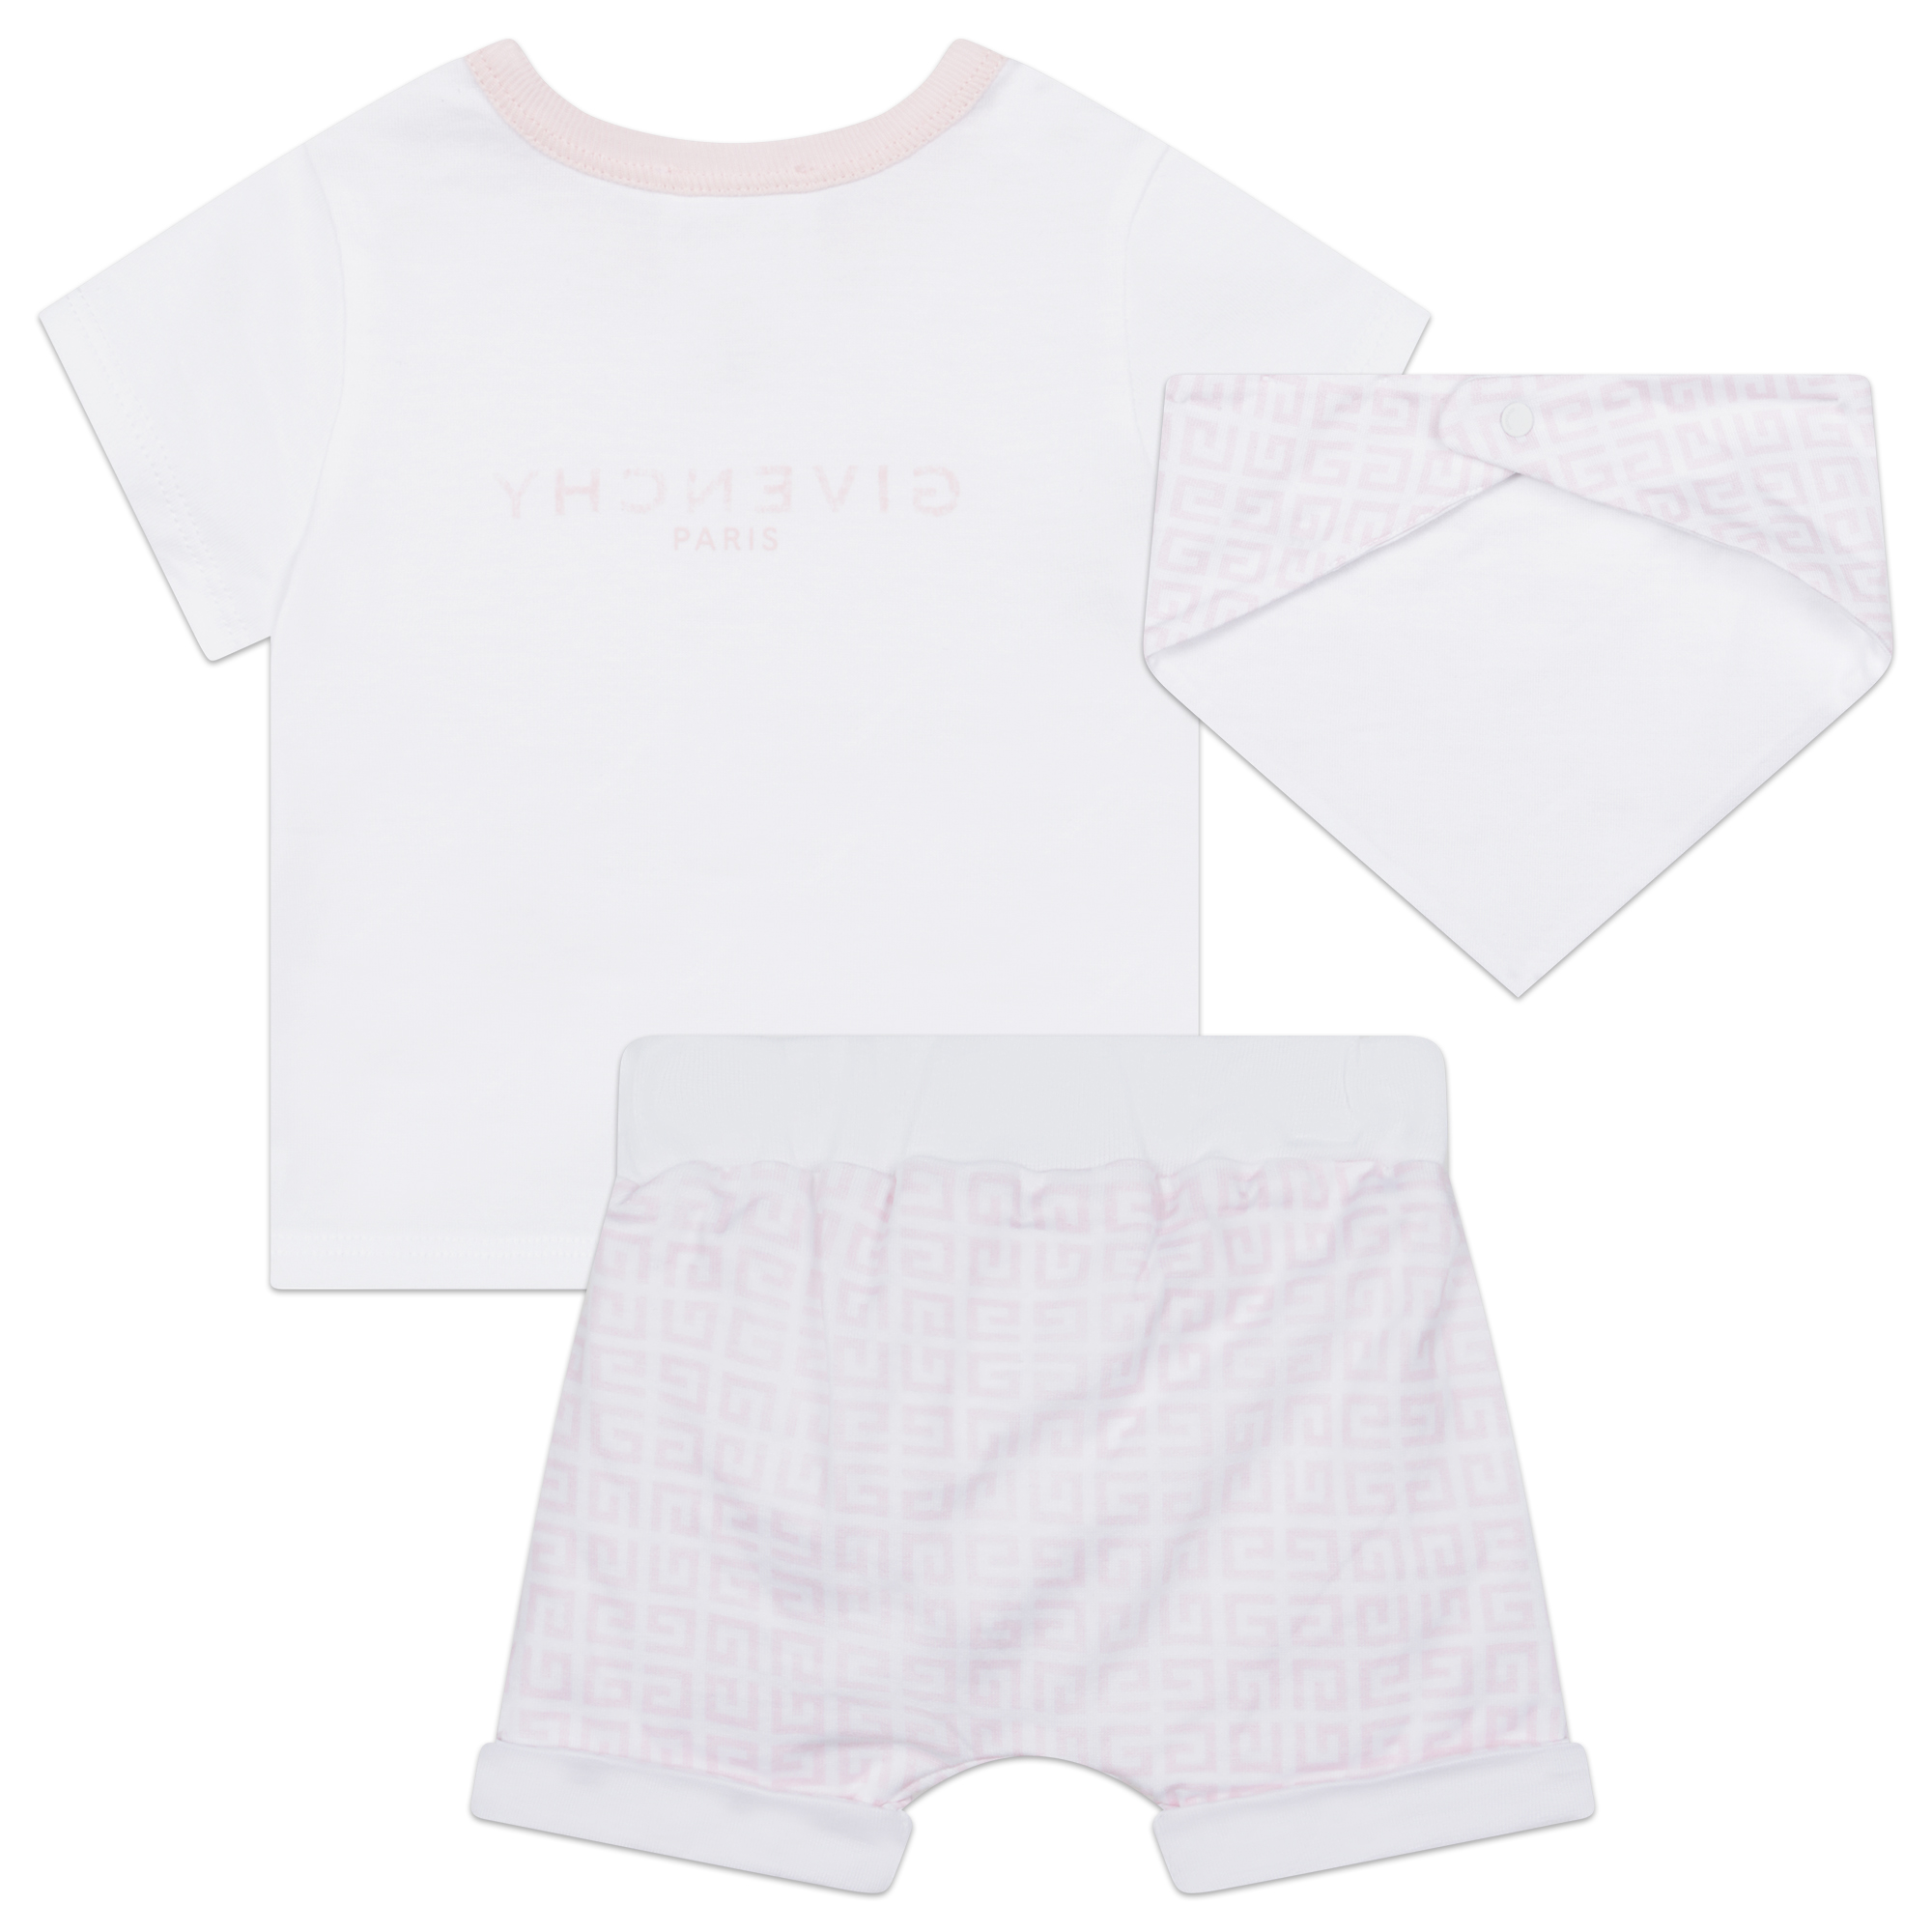 T-shirt, shorts and bandana GIVENCHY for UNISEX